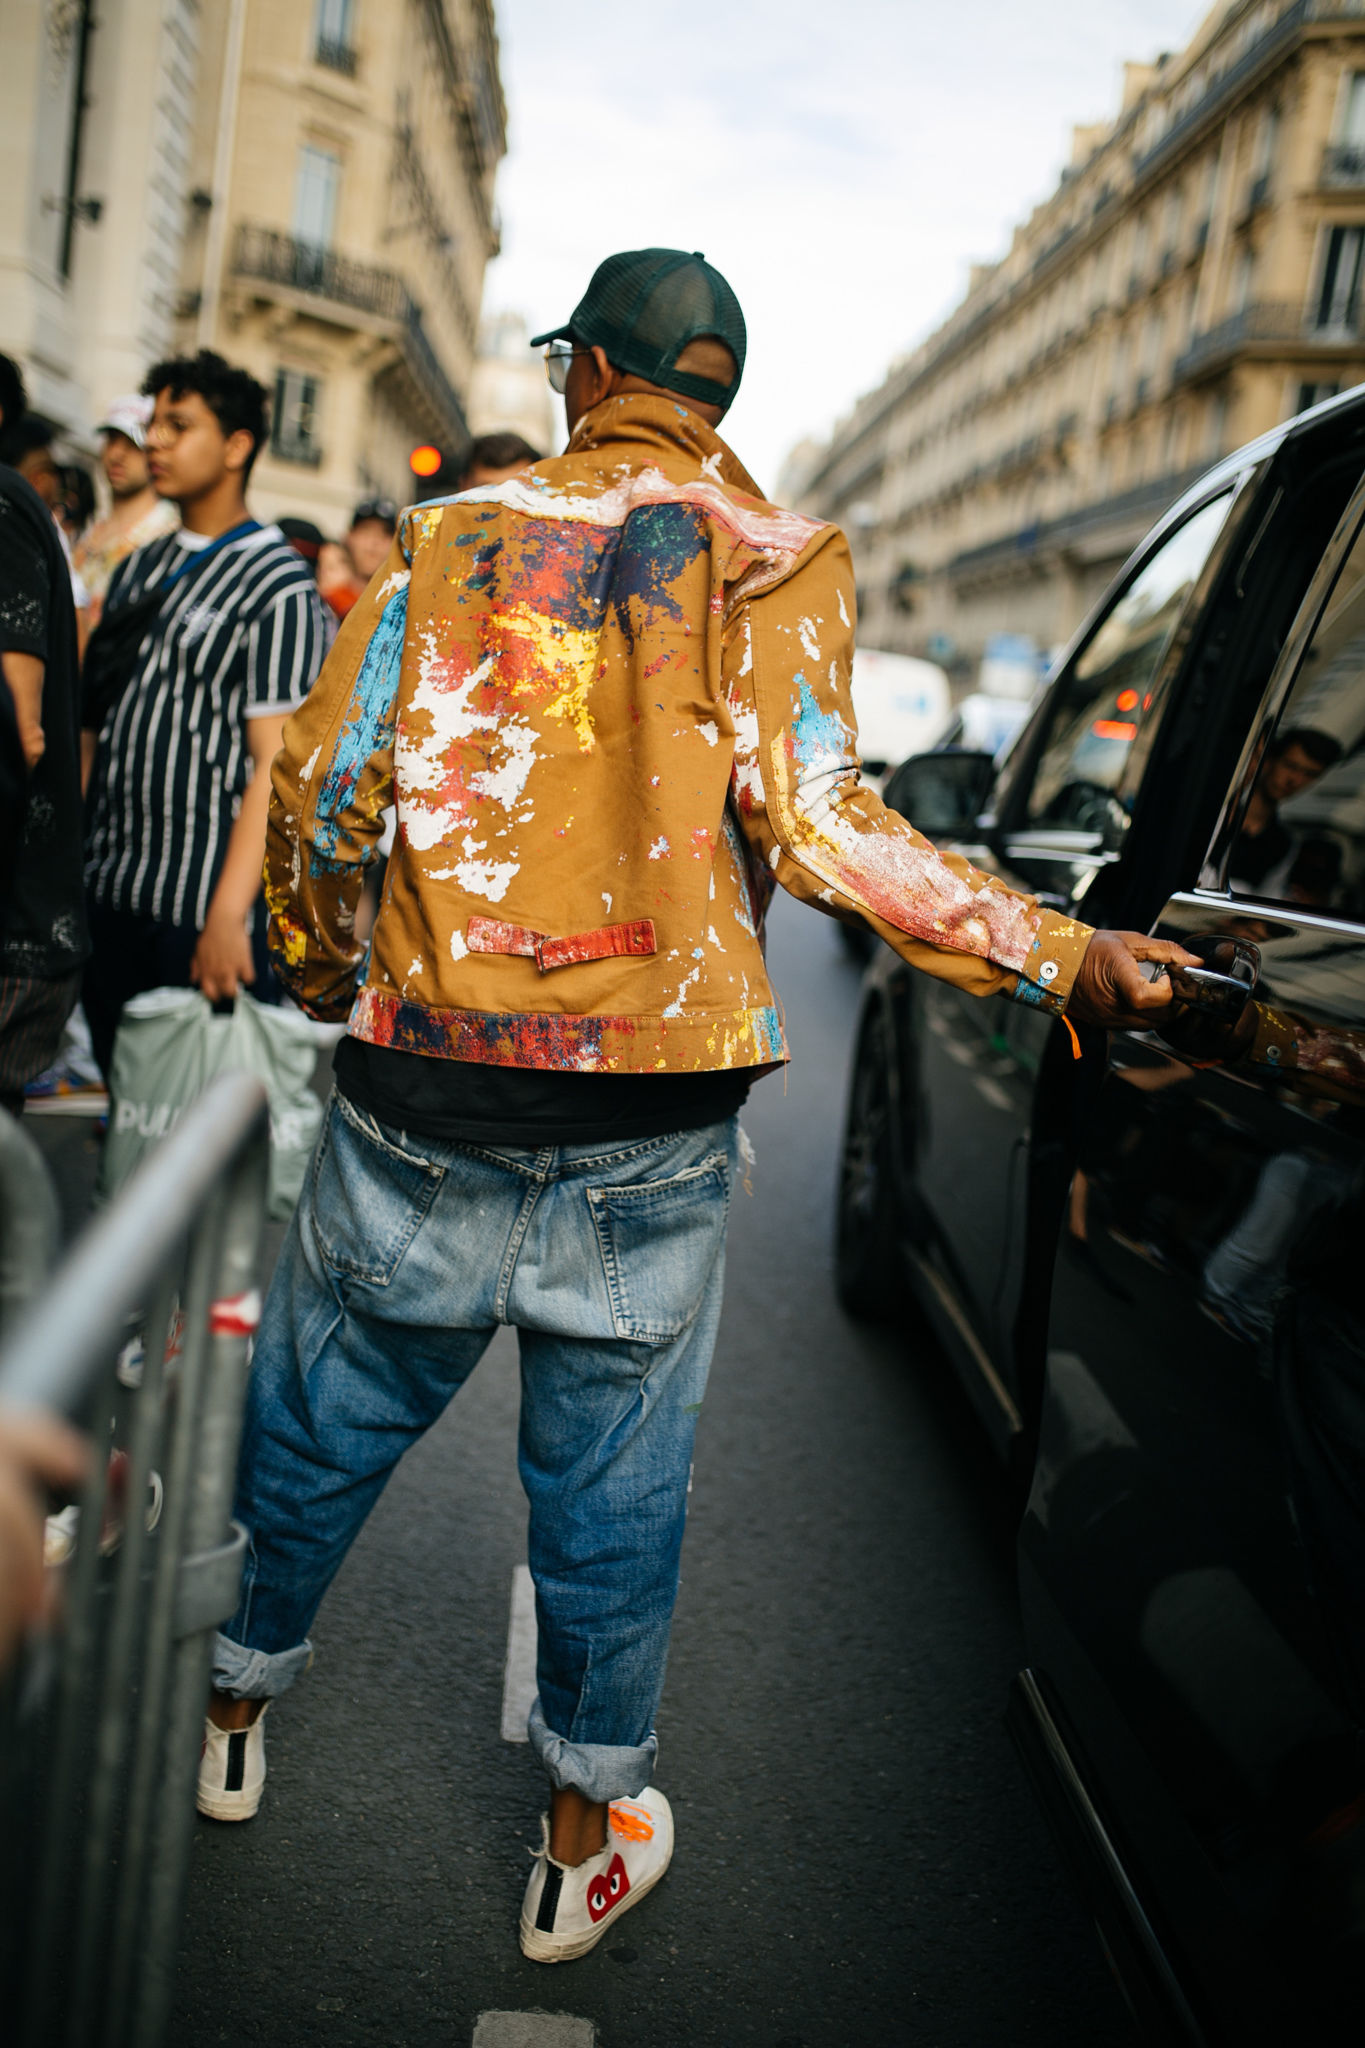 スナップ 吹き荒れるフォーマル旋風 迎え撃つパリのストリート 年春夏パリ メンズ ファッション ウイーク Wwdjapan Com